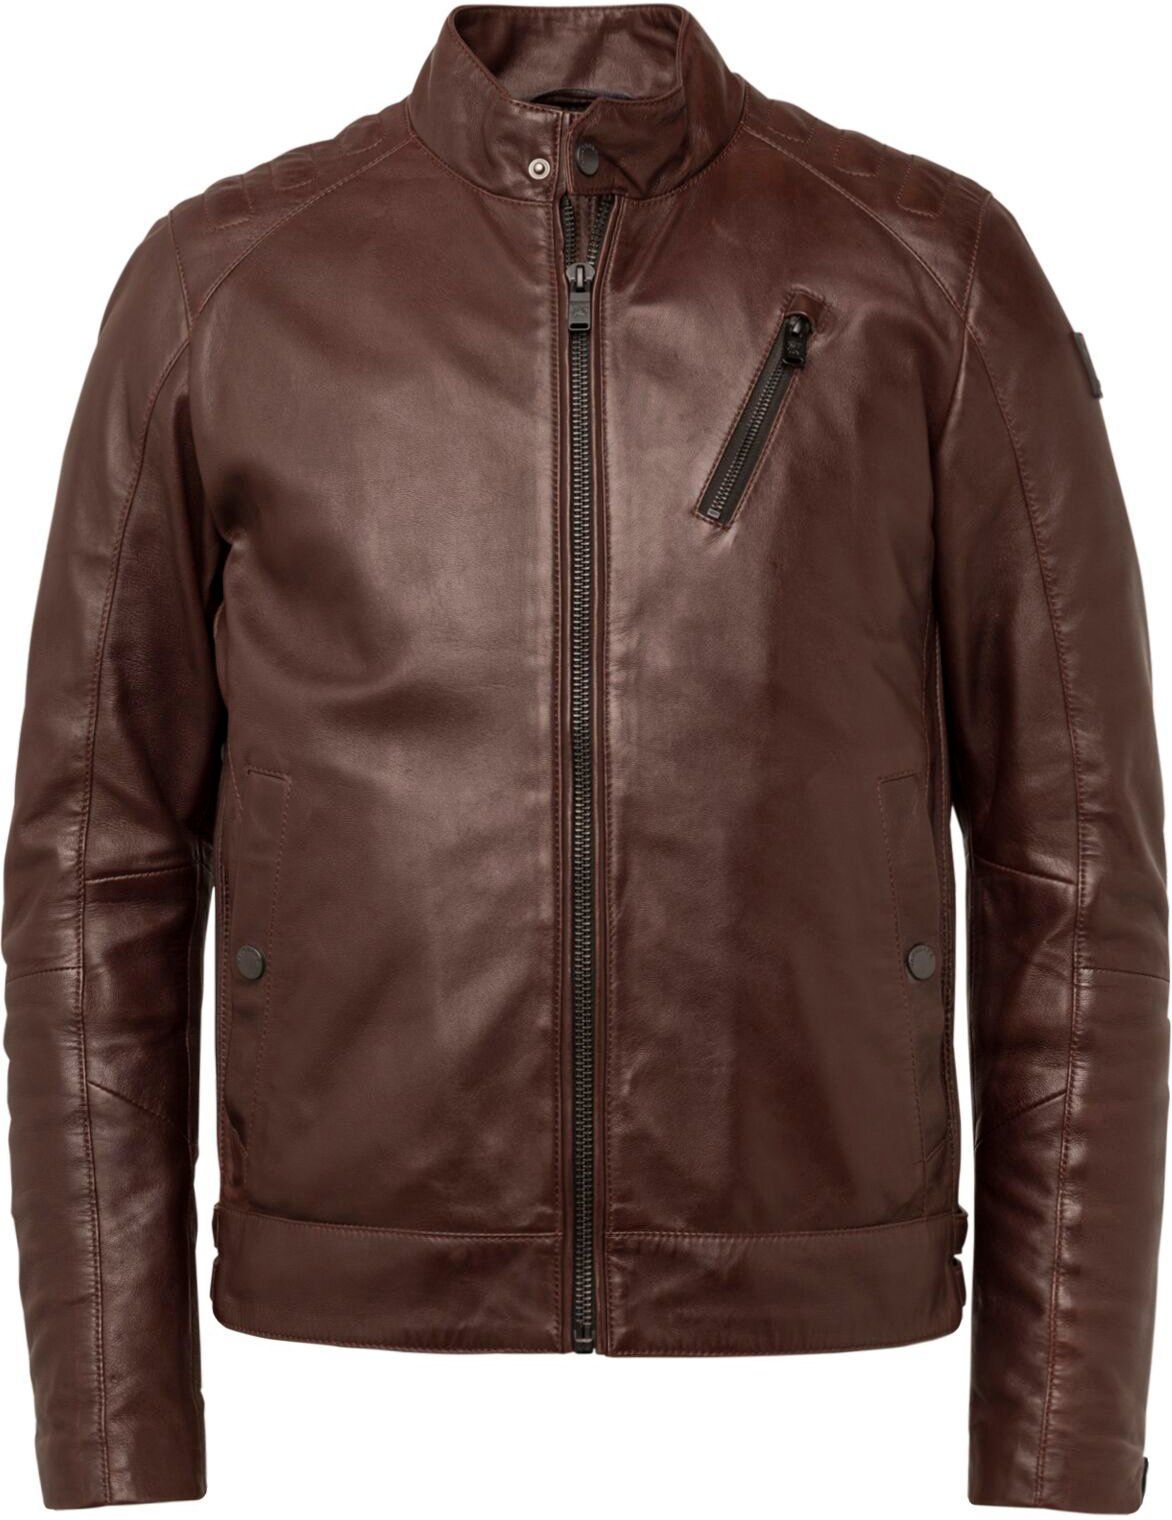 Vanguard Leather Jacket Dark Brown size XL